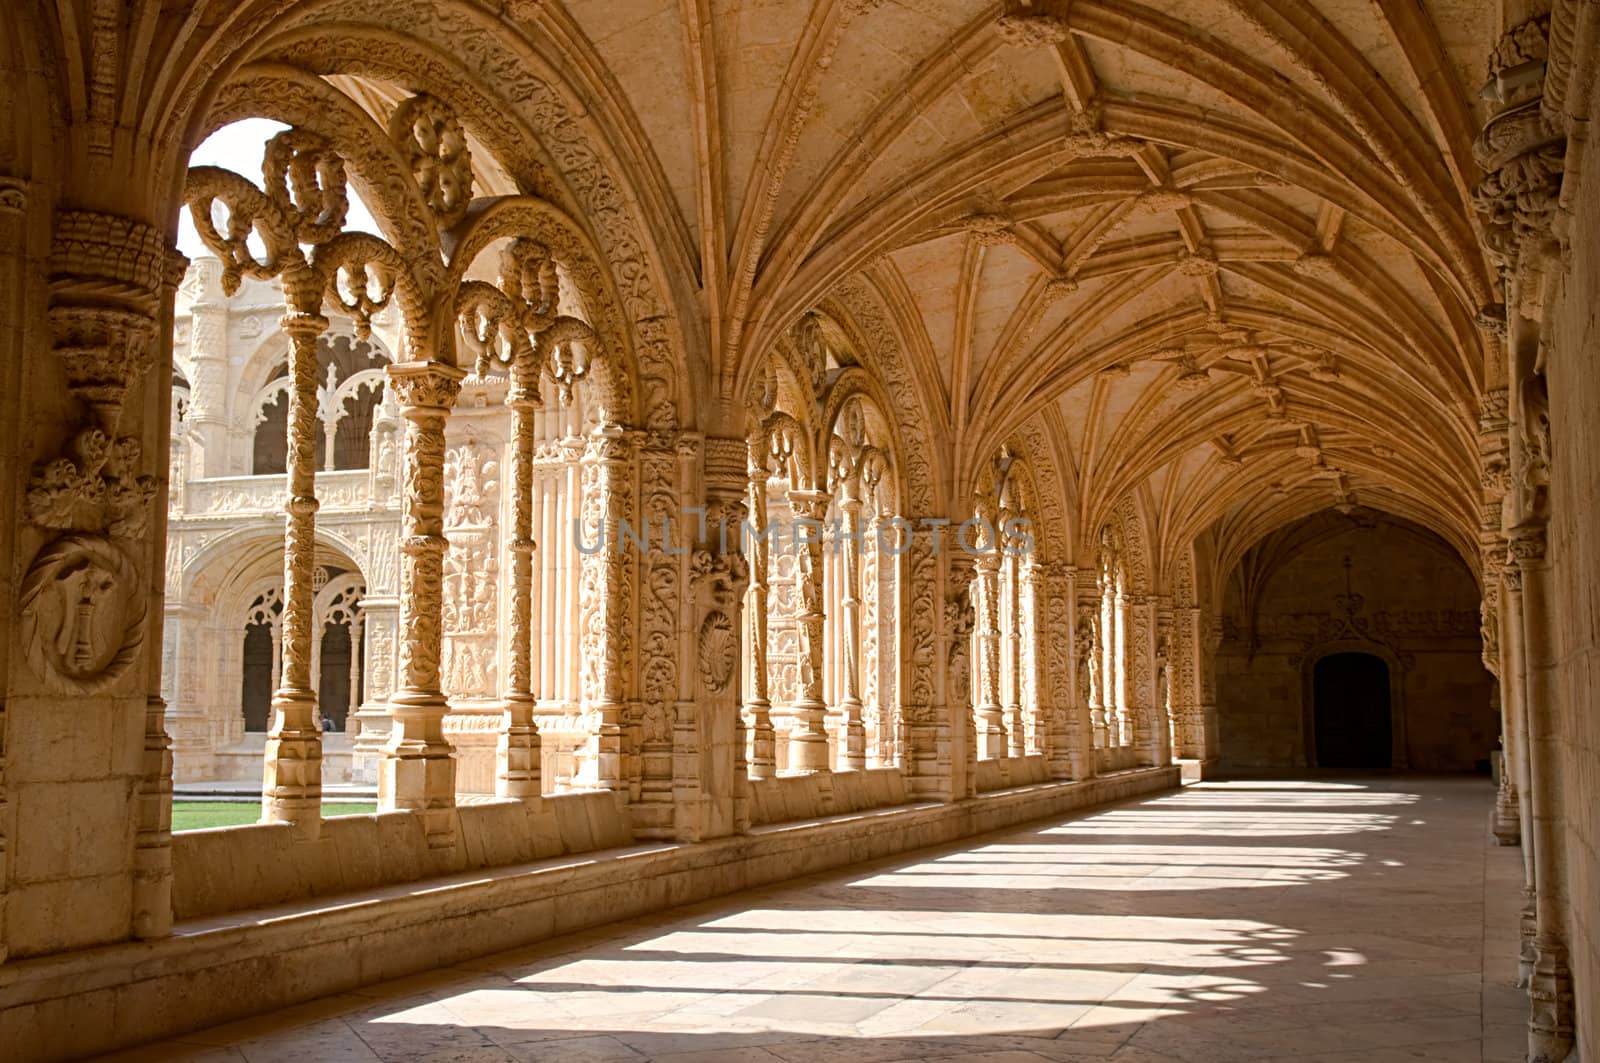 Interior corridor of the Mosteiro Dos Jeronimos, Lisbon, Portugal